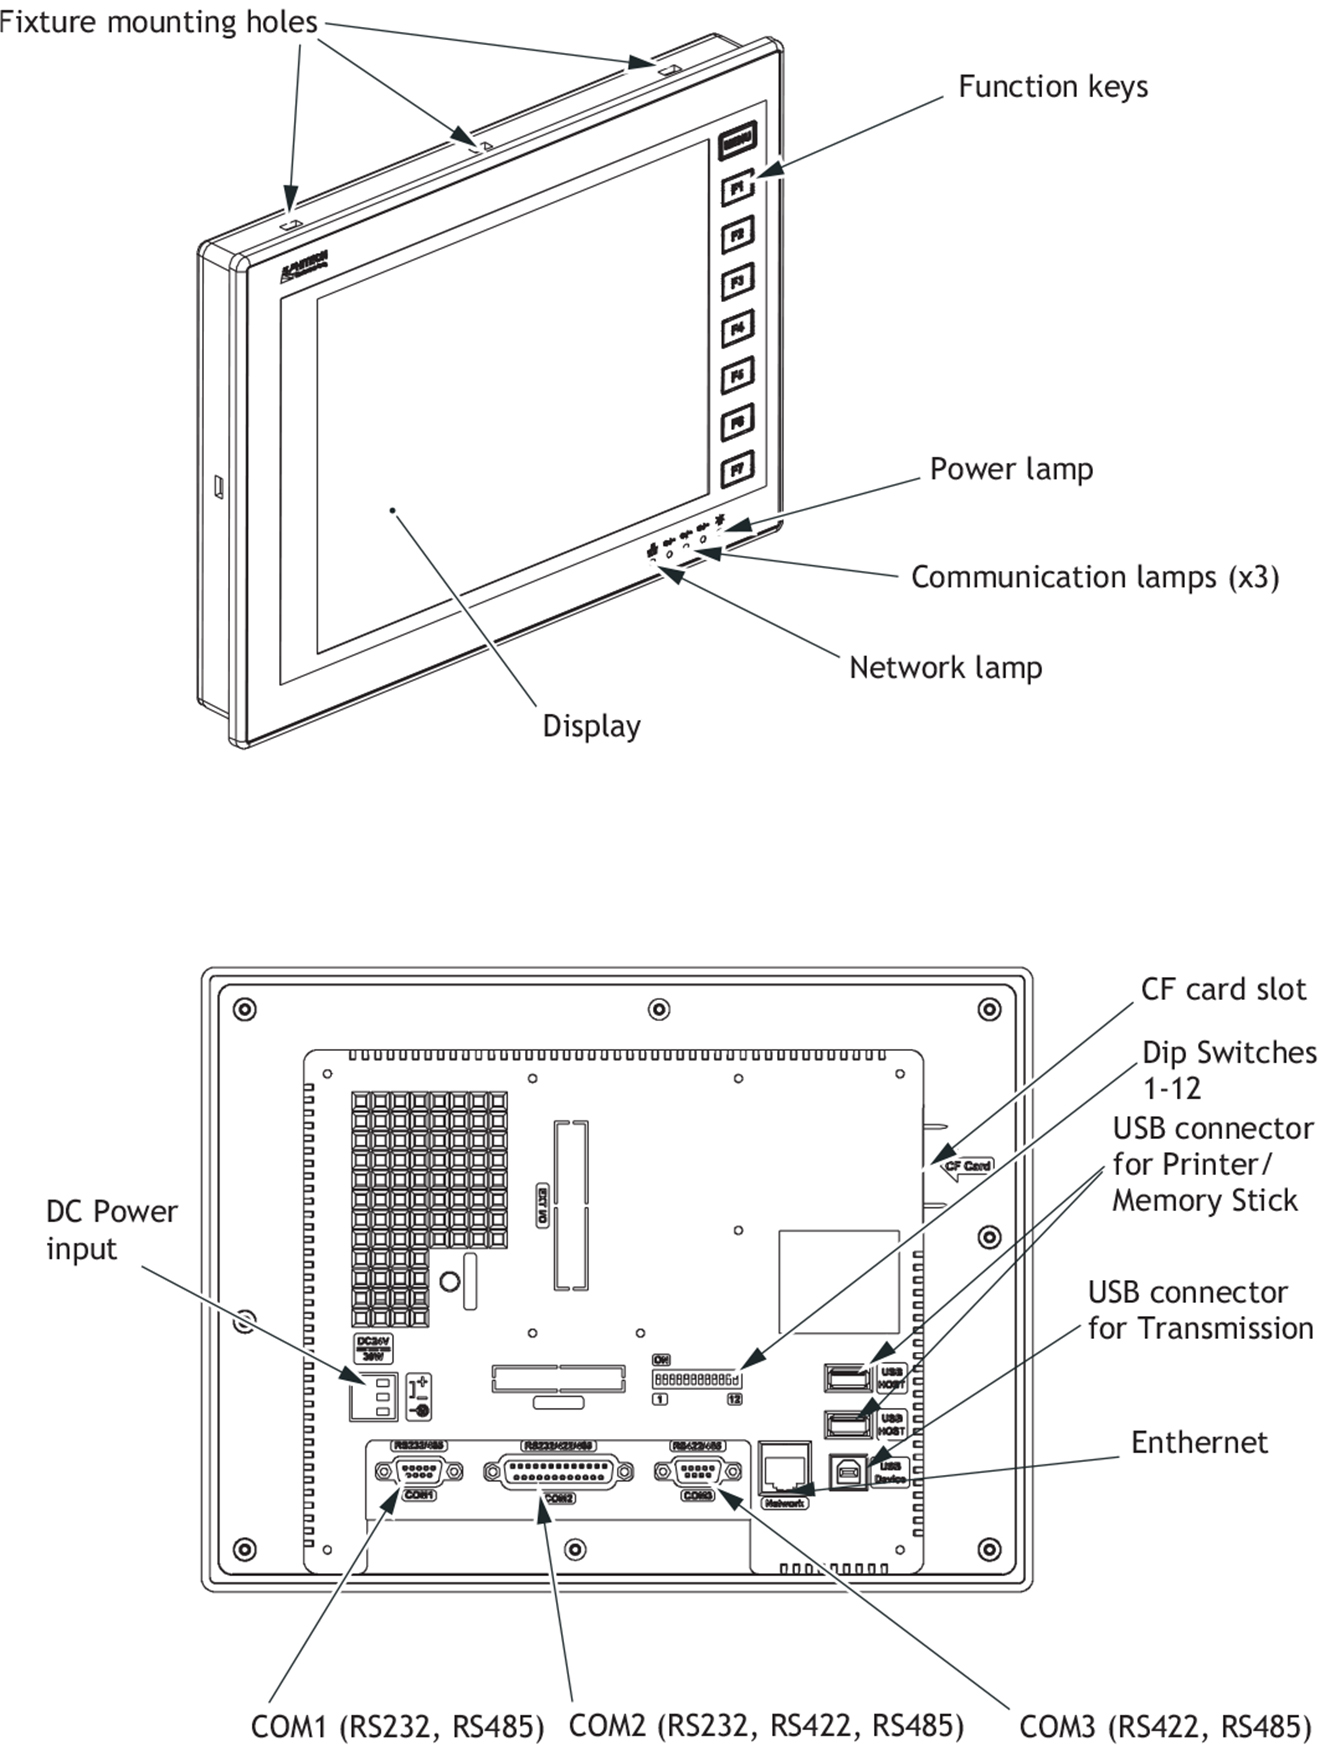 PWS6A00F Màn hình cảm ứng HMI Hitech 10.4 Inch Mono STN LCD